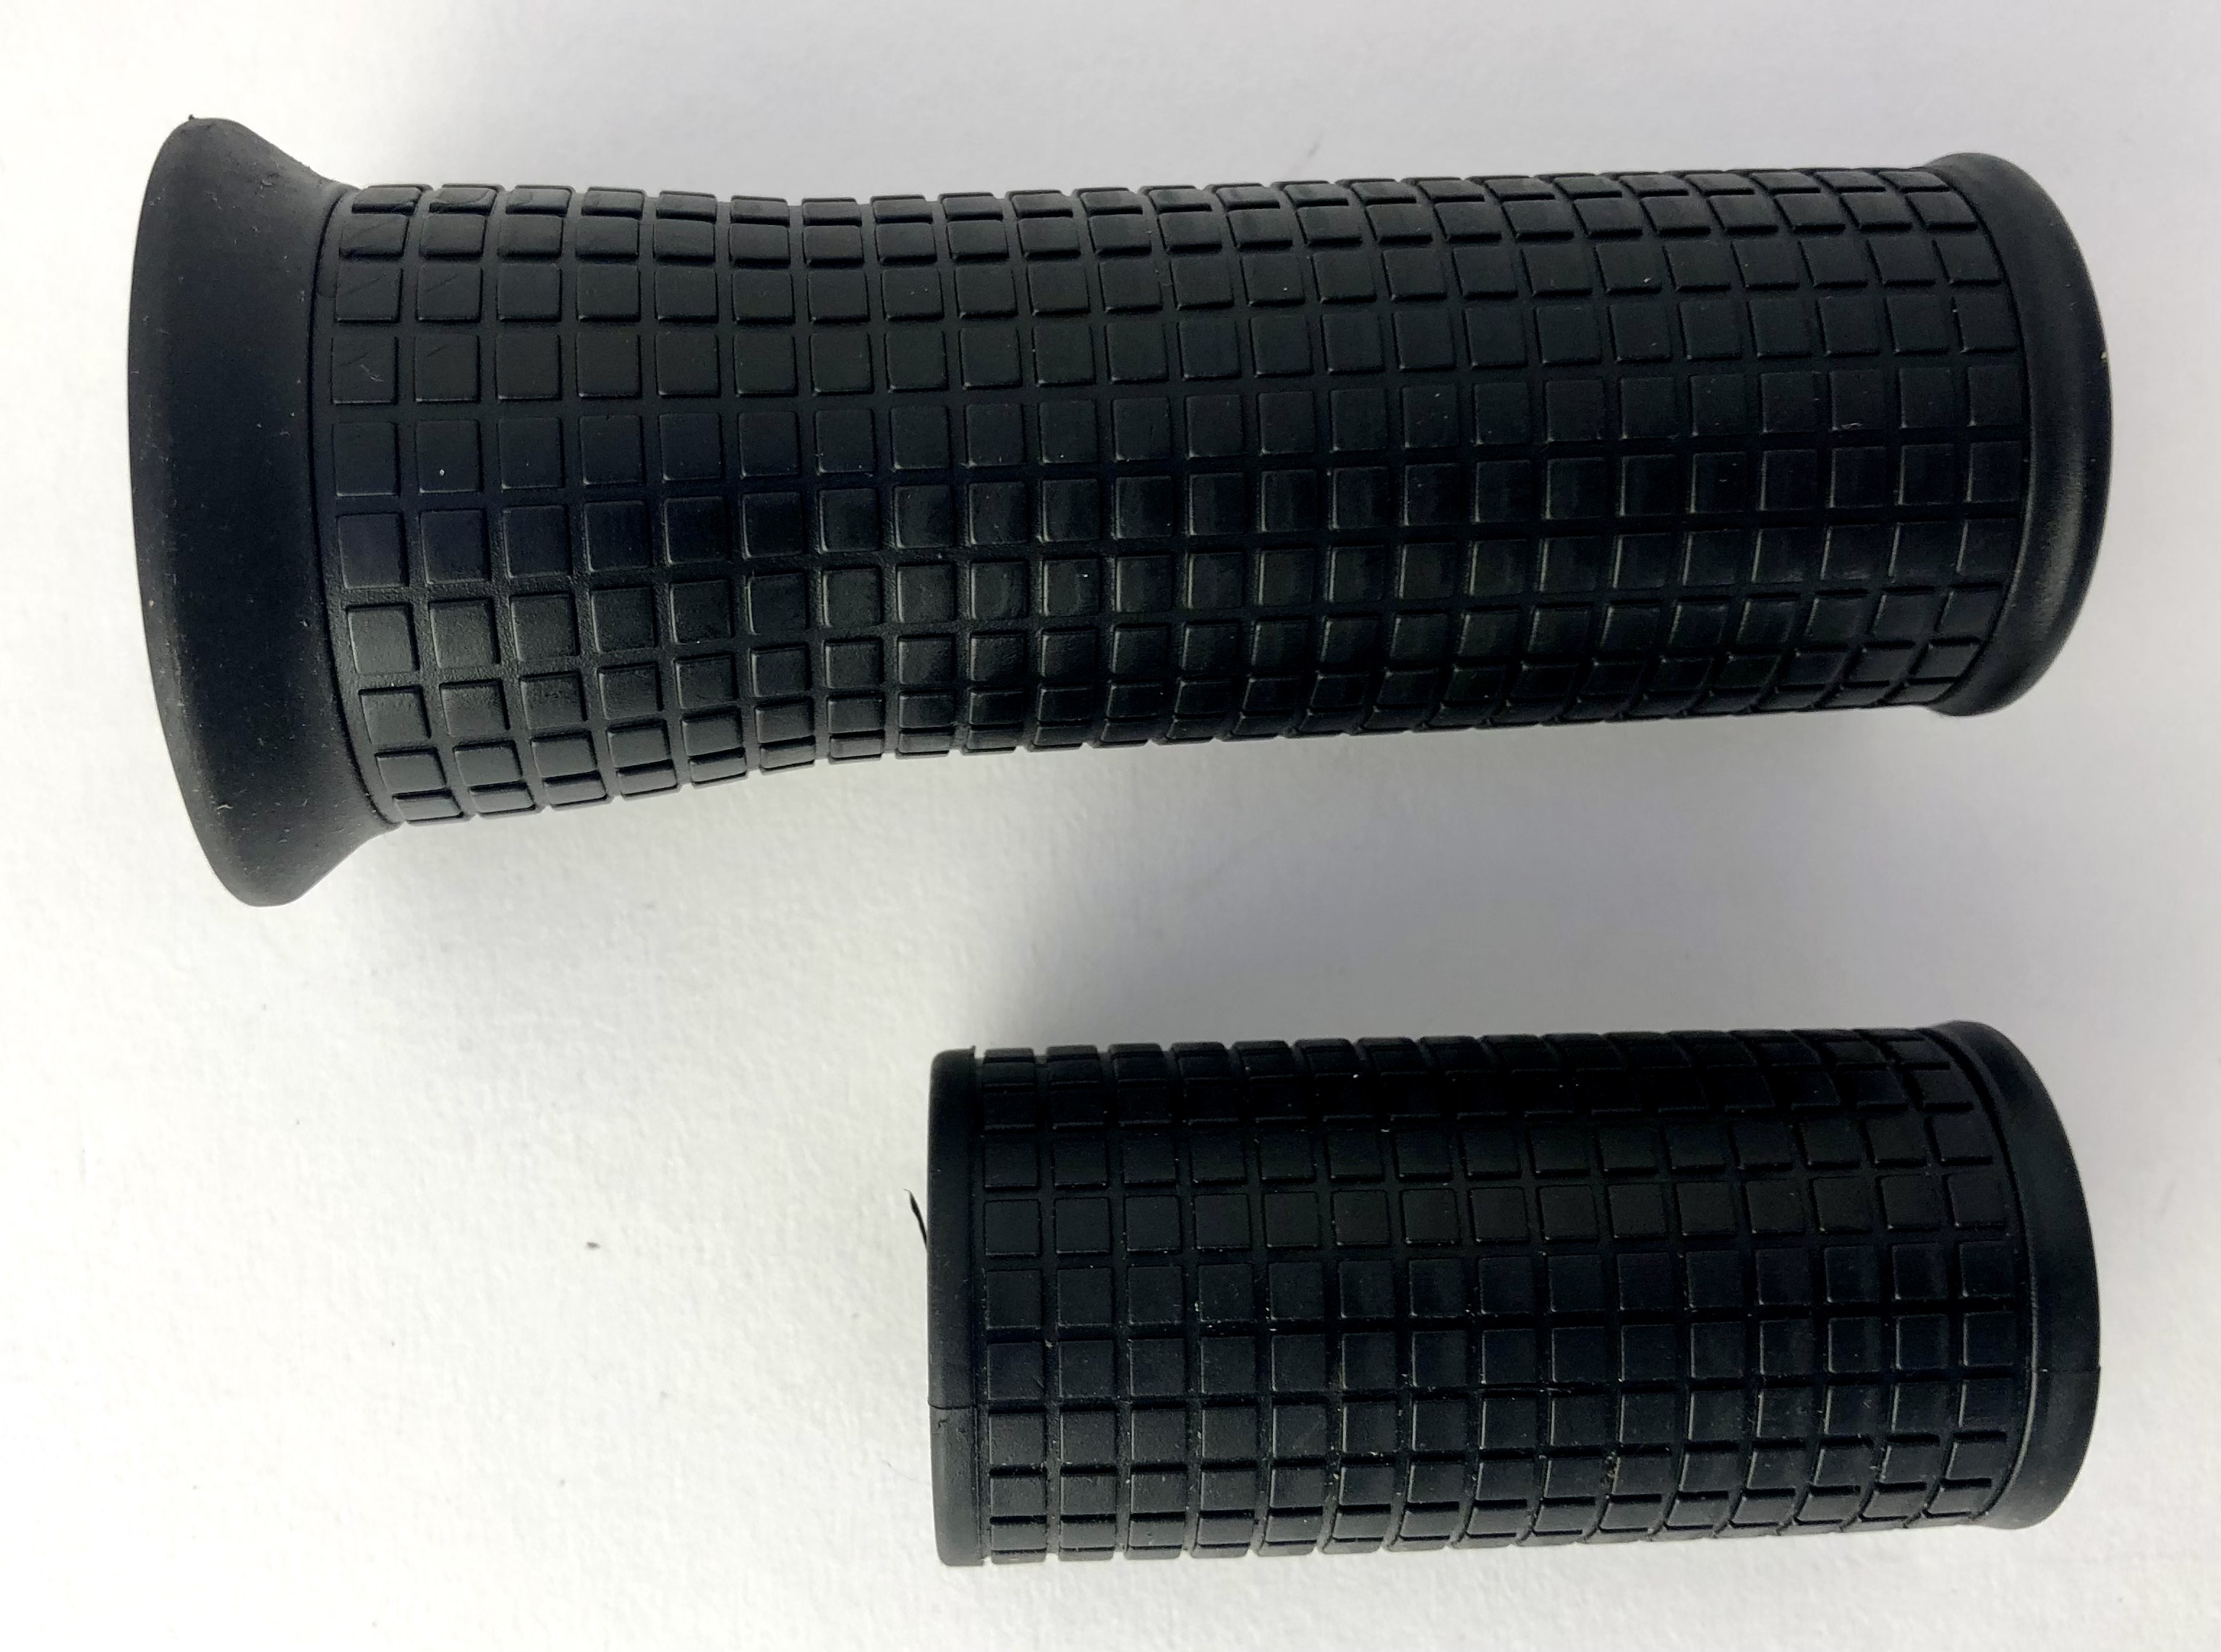 Rubber Grips for handlebar black, long and short